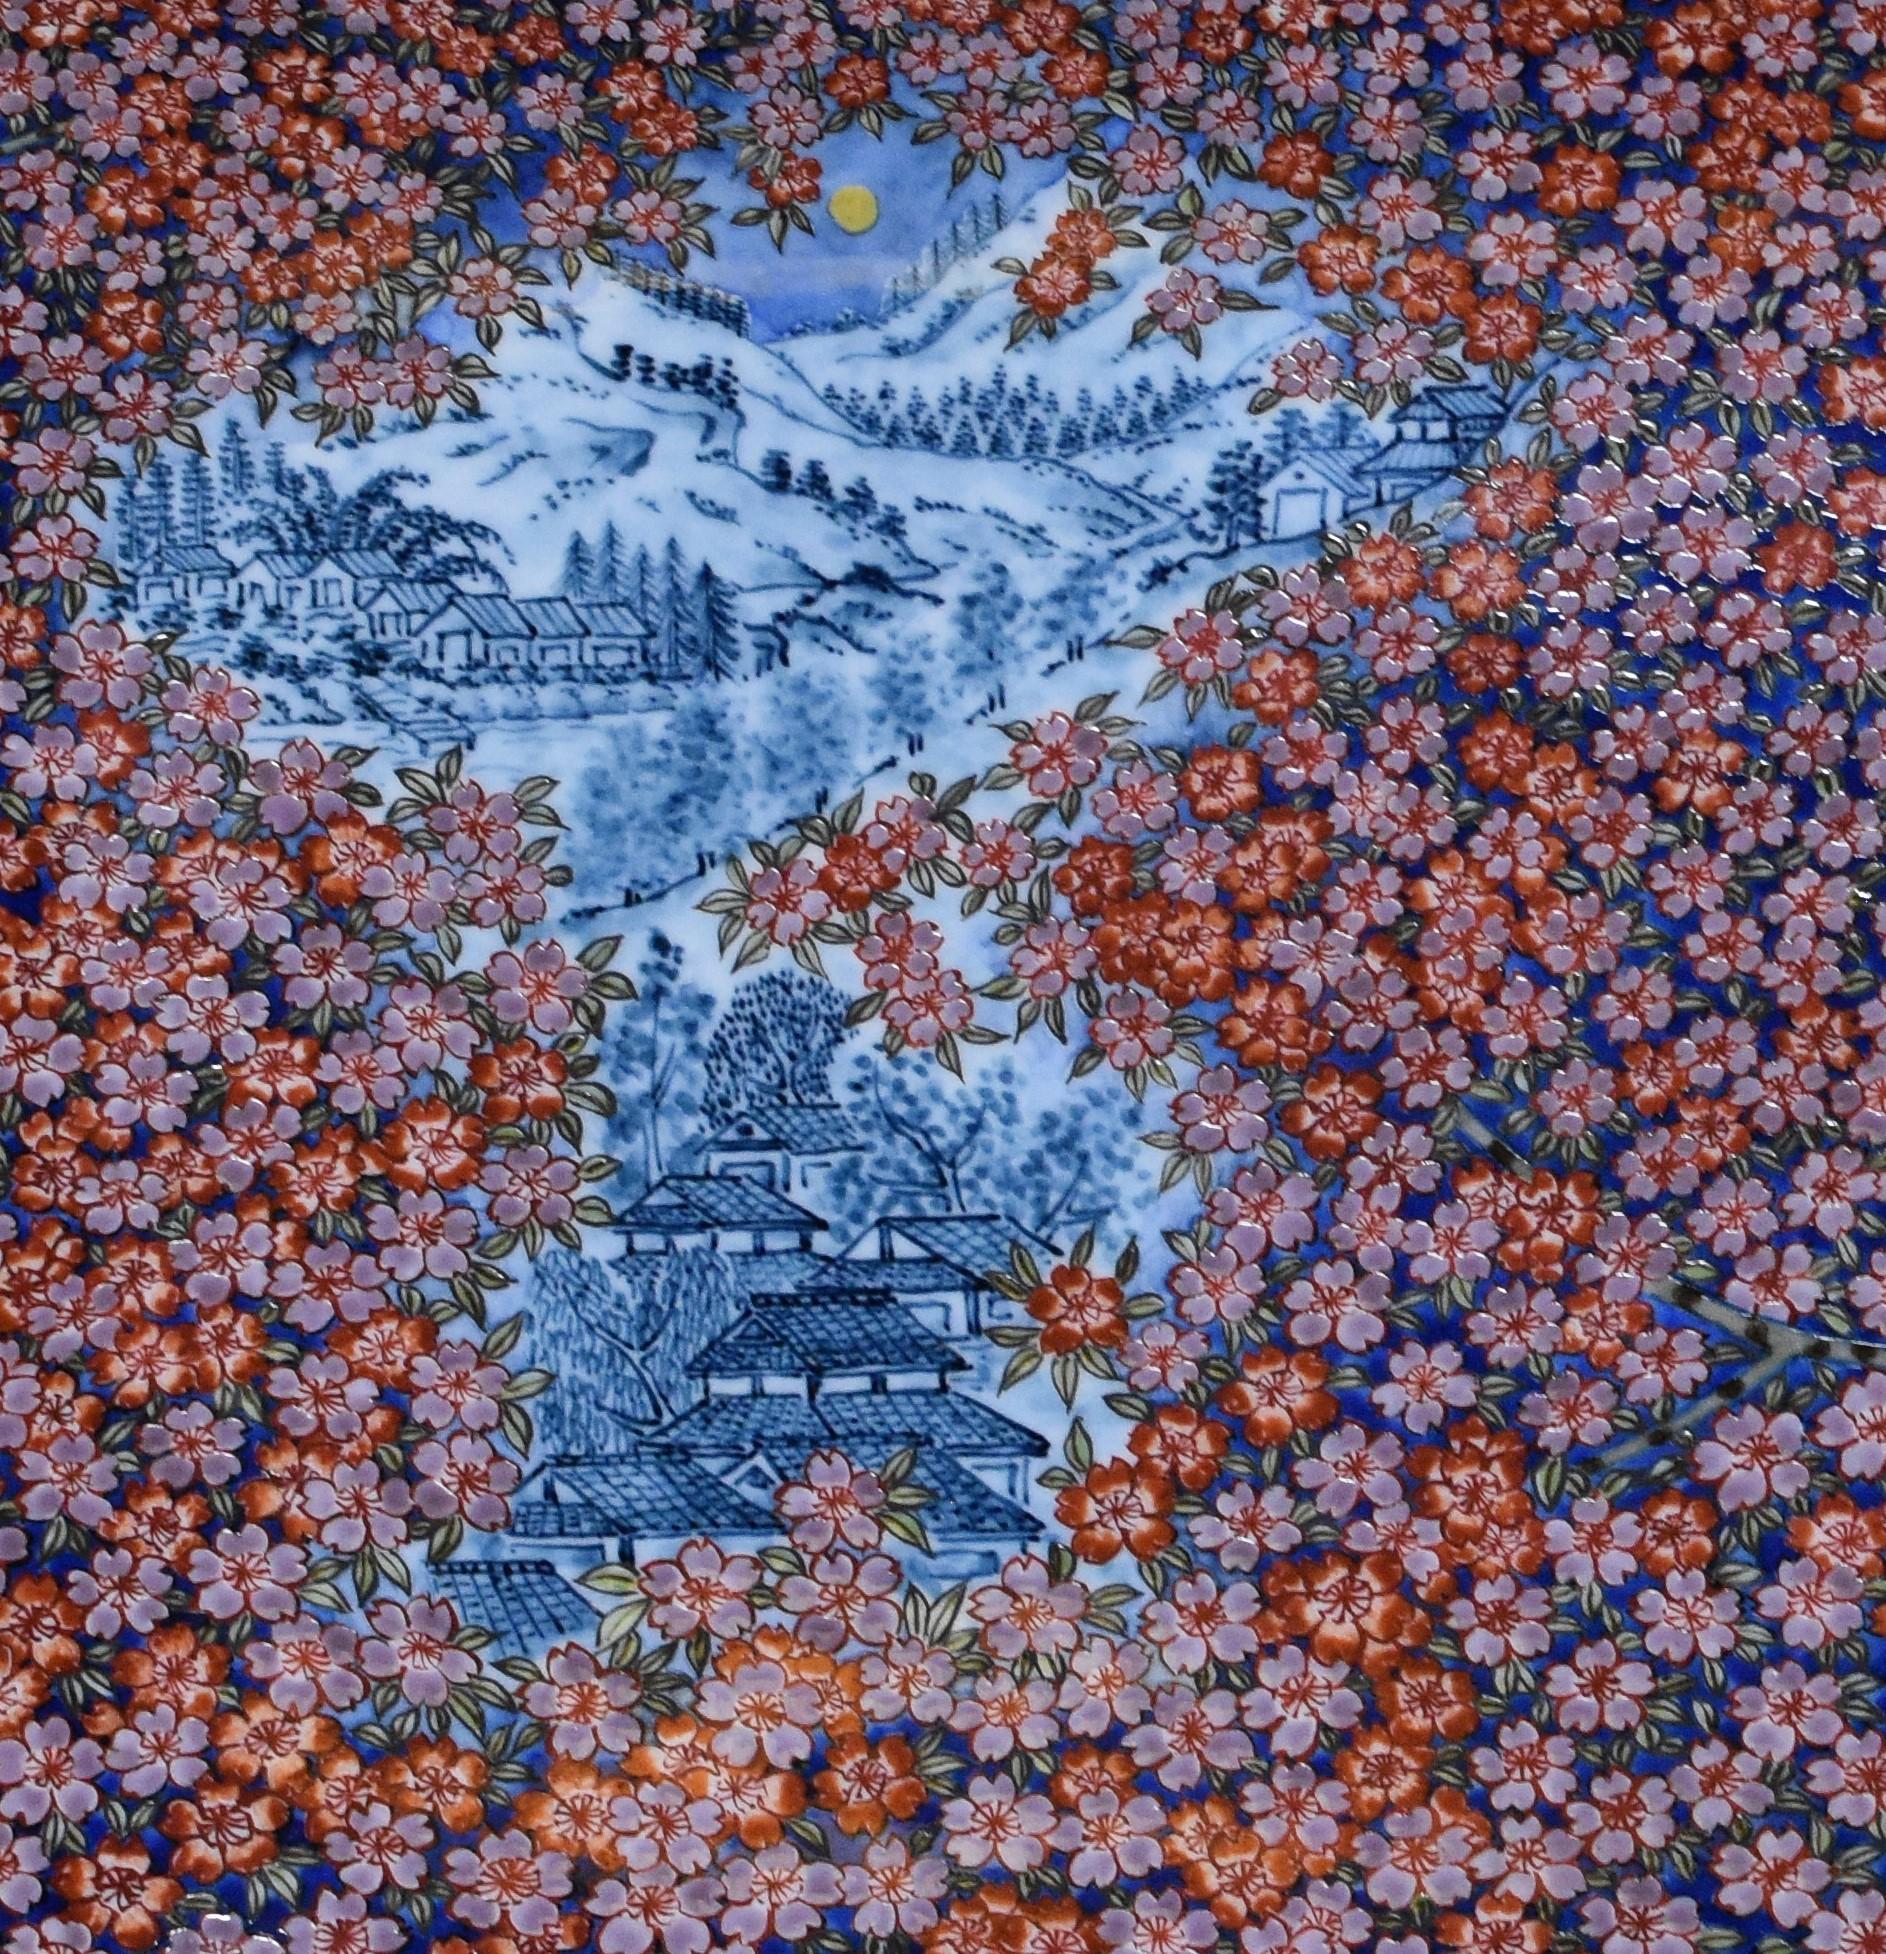 Exquisite japanische zeitgenössische dekorative Porzellan rechteckige Ladegerät / Platte, sorgfältig aufwendig von Hand in blau, lila und rot gemalt, ein signiertes Meisterwerk von der zweiten Generation Meister Porzellan Künstler der Imari-Arita